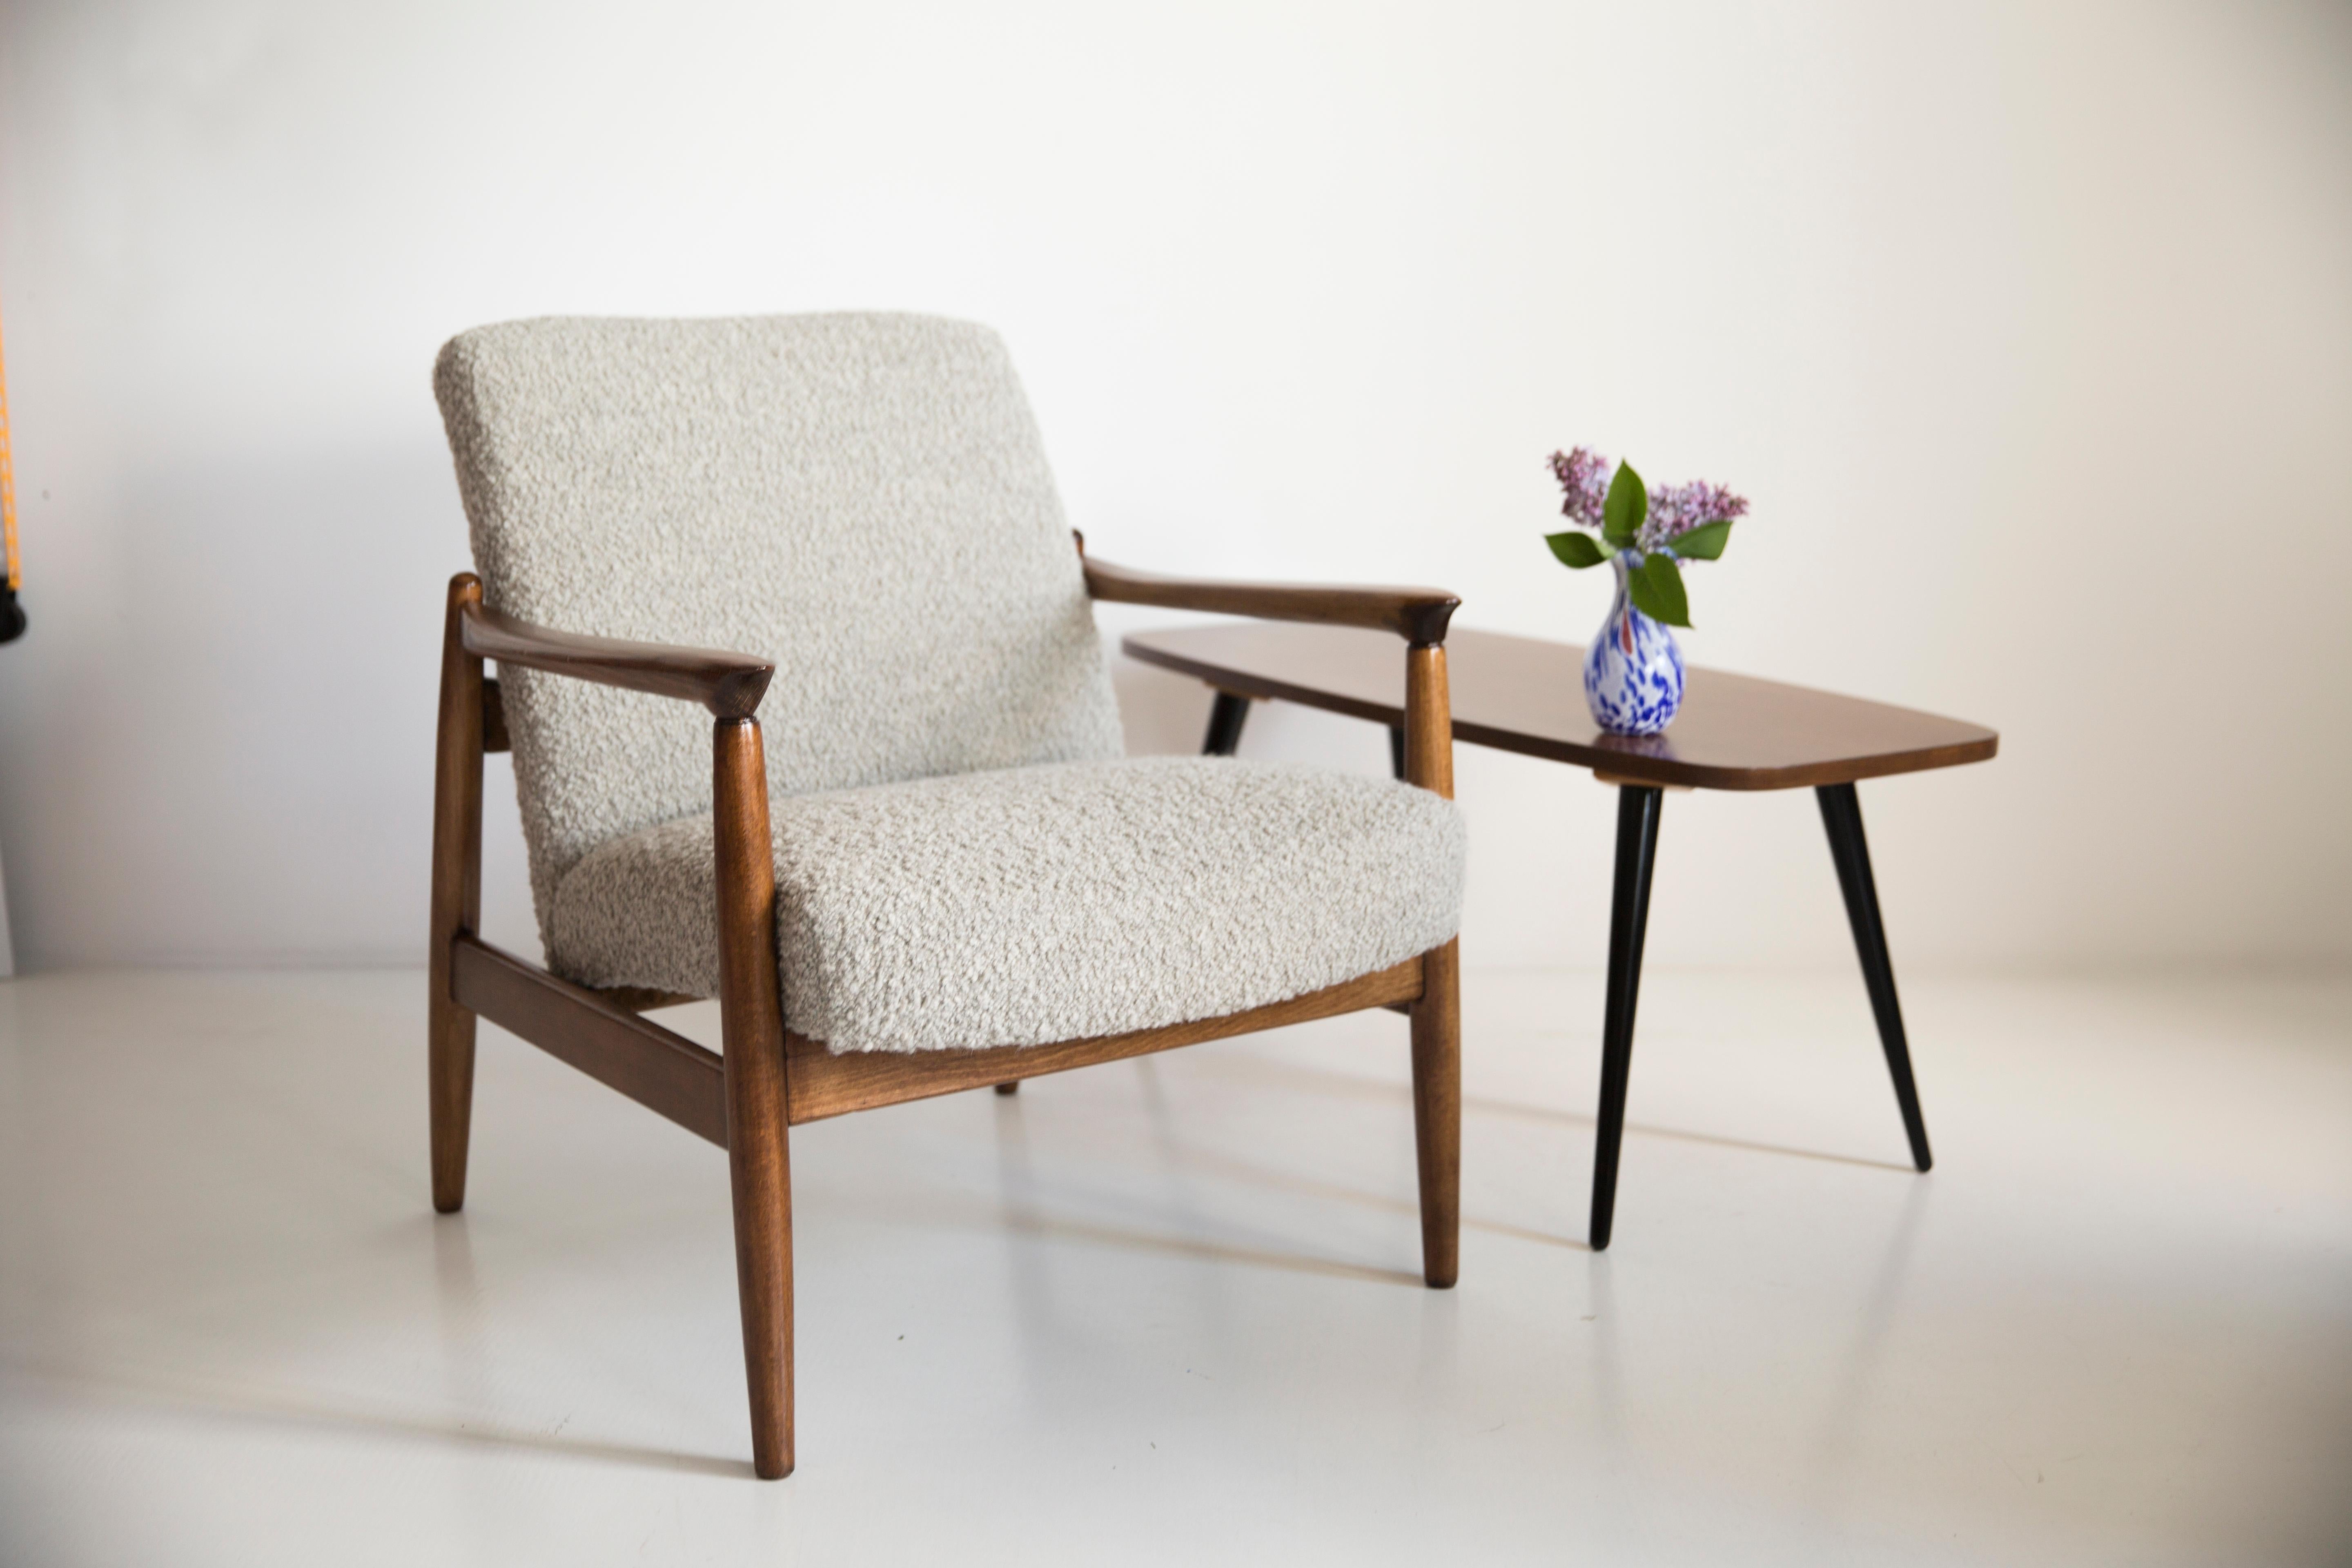 Einzigartiger Sessel aus Alpakawolle, entworfen von Edmund Homa. Der Sessel wurde in den 1960er Jahren in der Möbelfabrik Gosciecinska aus massivem Buchenholz hergestellt. Der Sessel vom Typ GFM gilt als einer der besten polnischen Sesselentwürfe